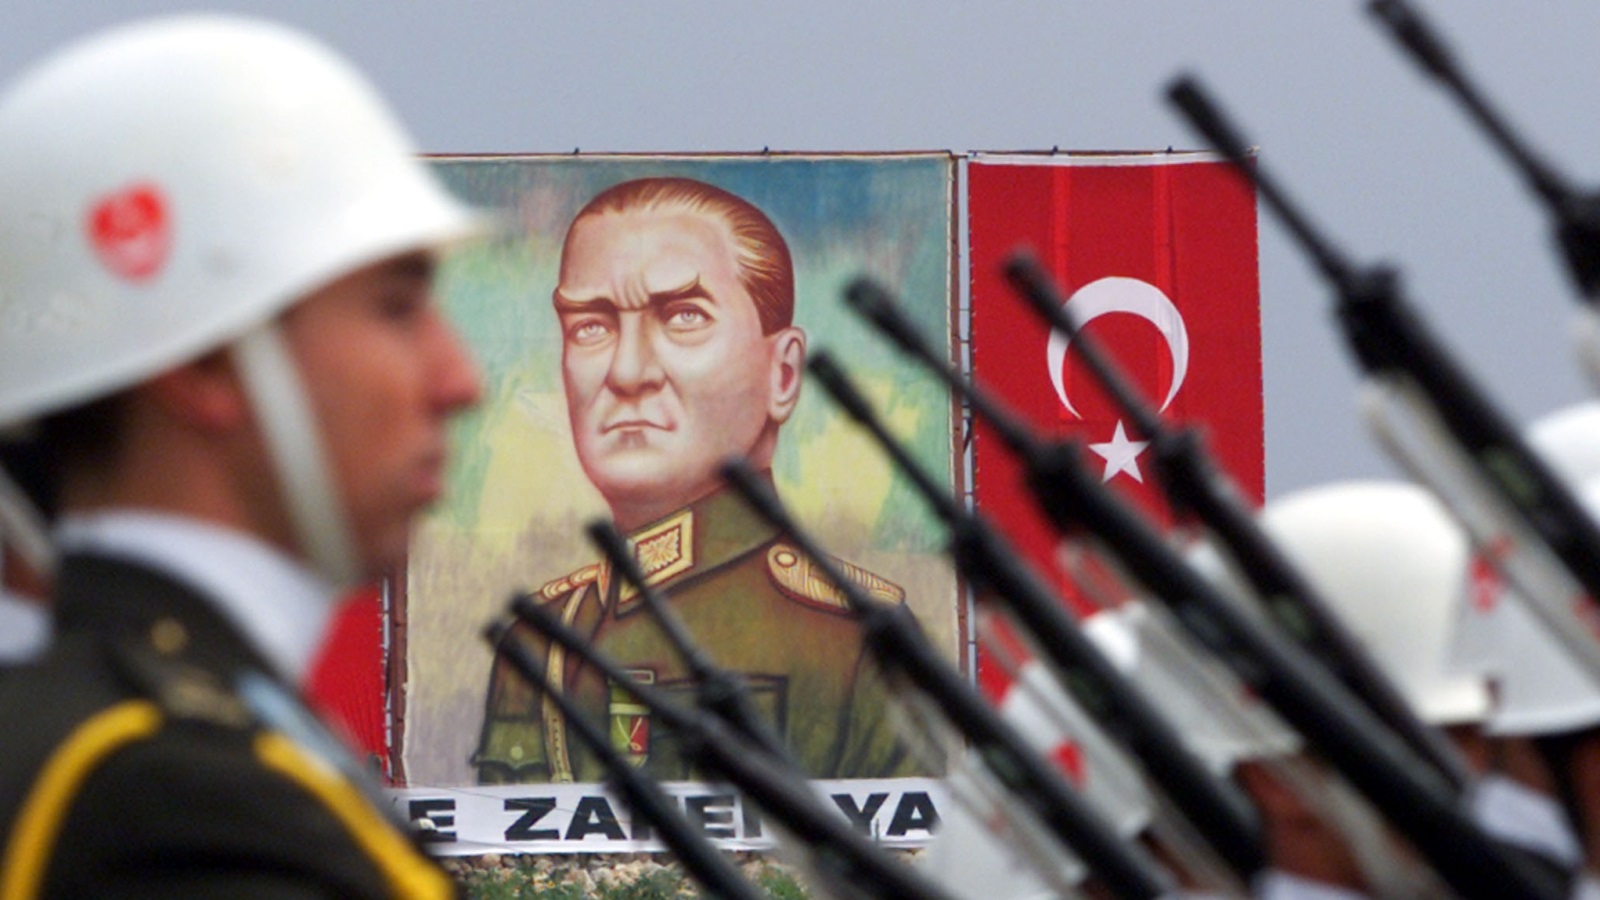 سابقاً؛ اختُزلت مهام تركيا خارجيًا في تحقيق الاندماج الكامل مع المعسكر الغربي، وفي شعار مؤسس الجمهورية أتاتورك 